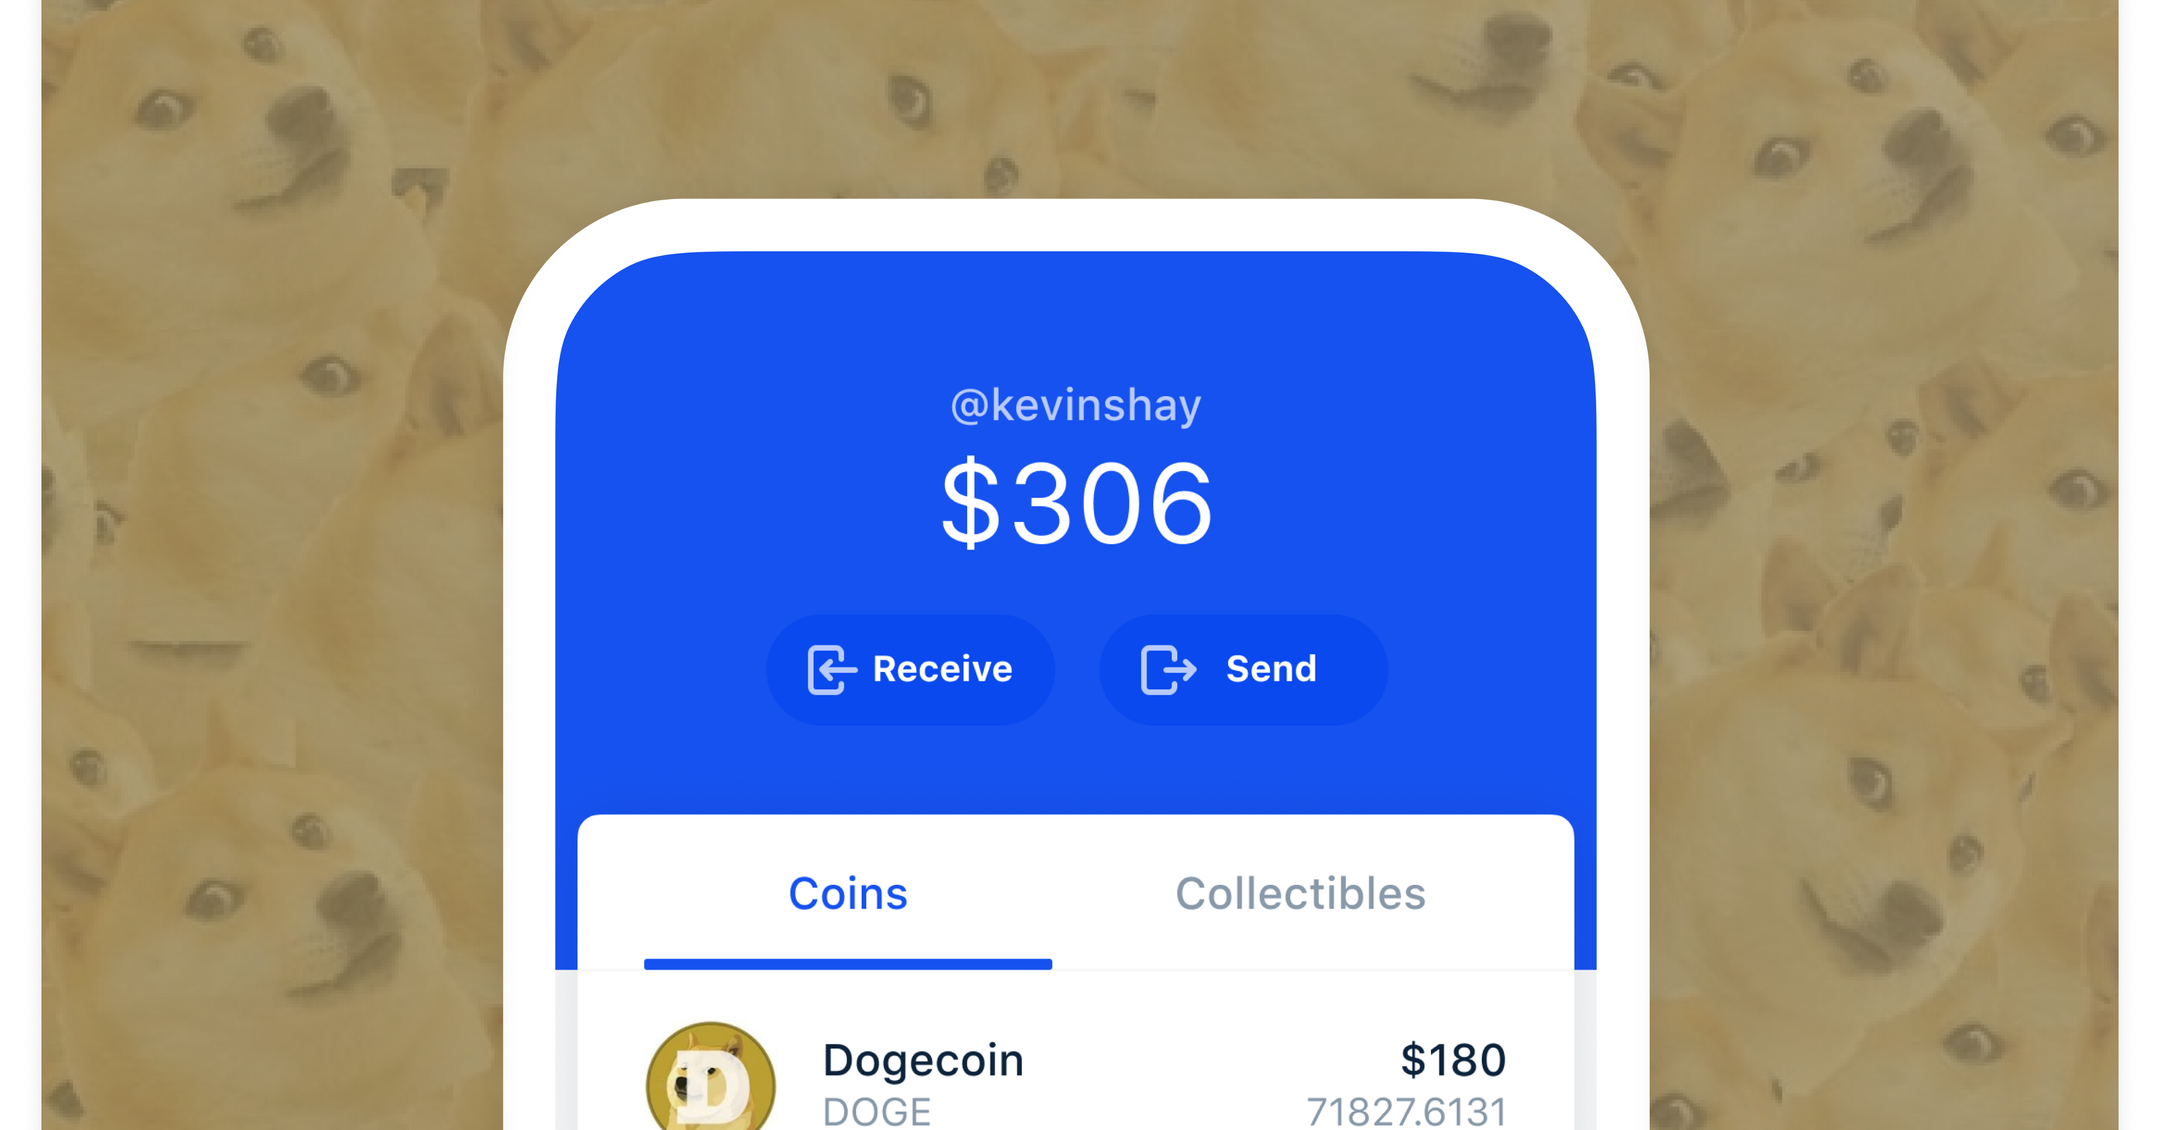 coinbase allowing dogecoin